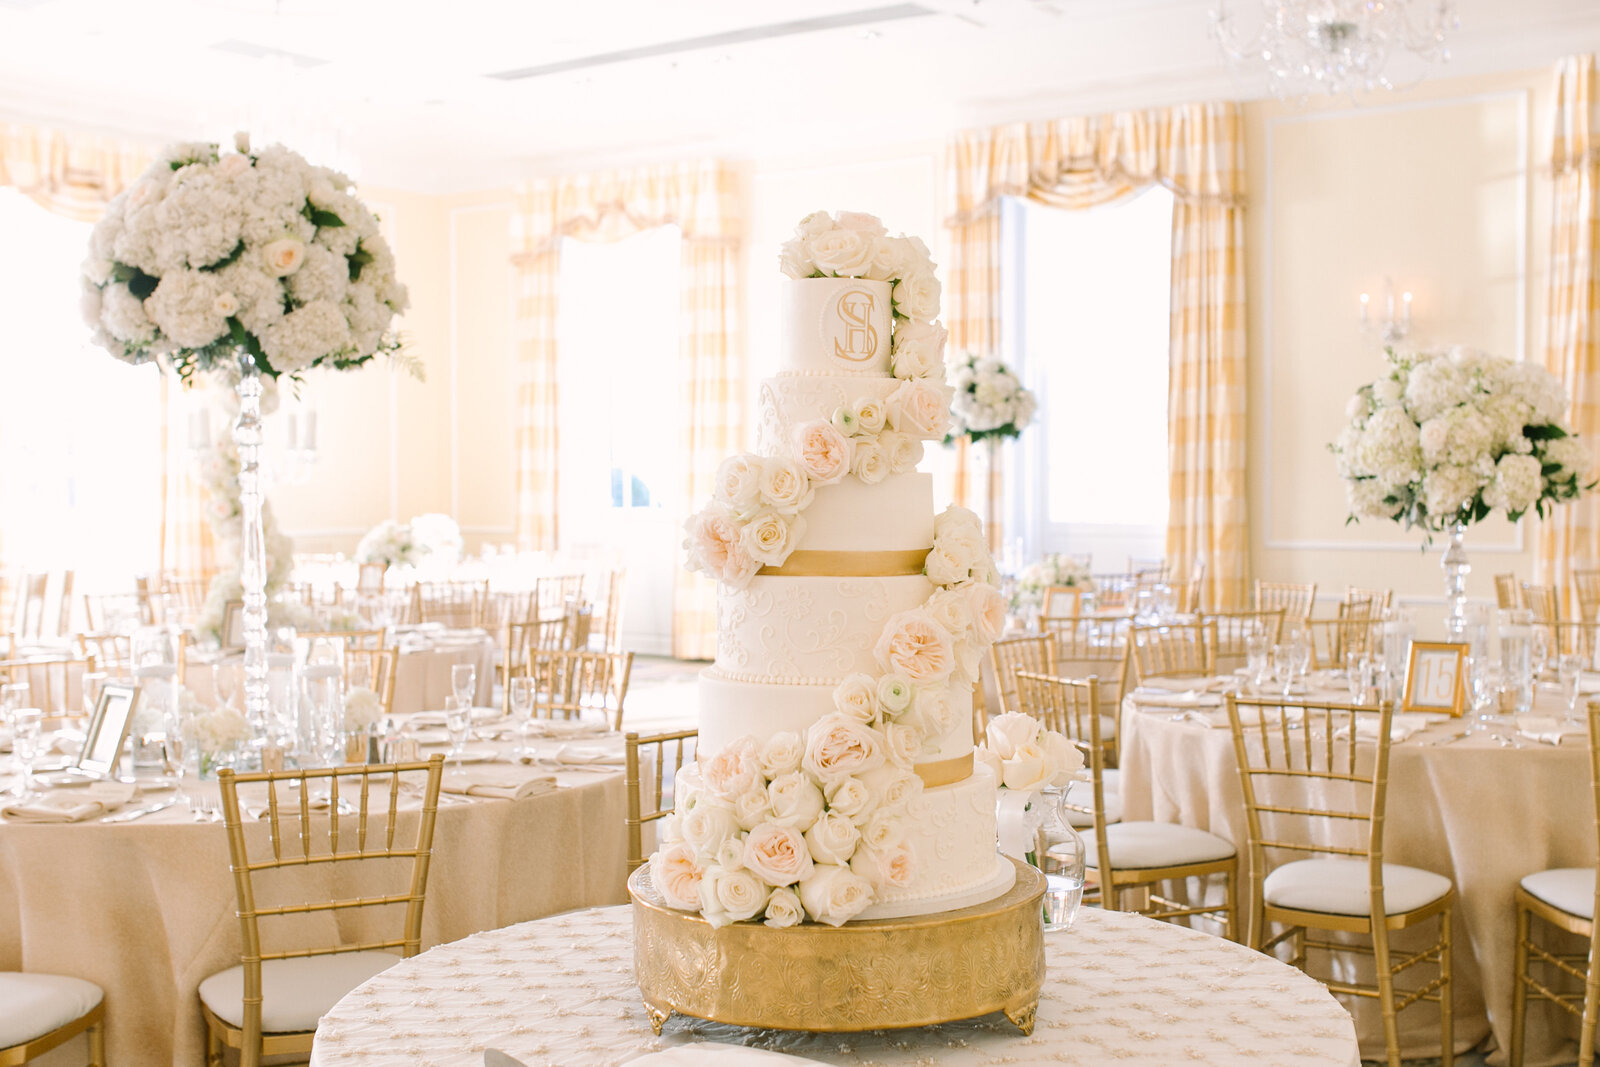 Glamorous-Wedding-Cake-Ashley-Cakes-7